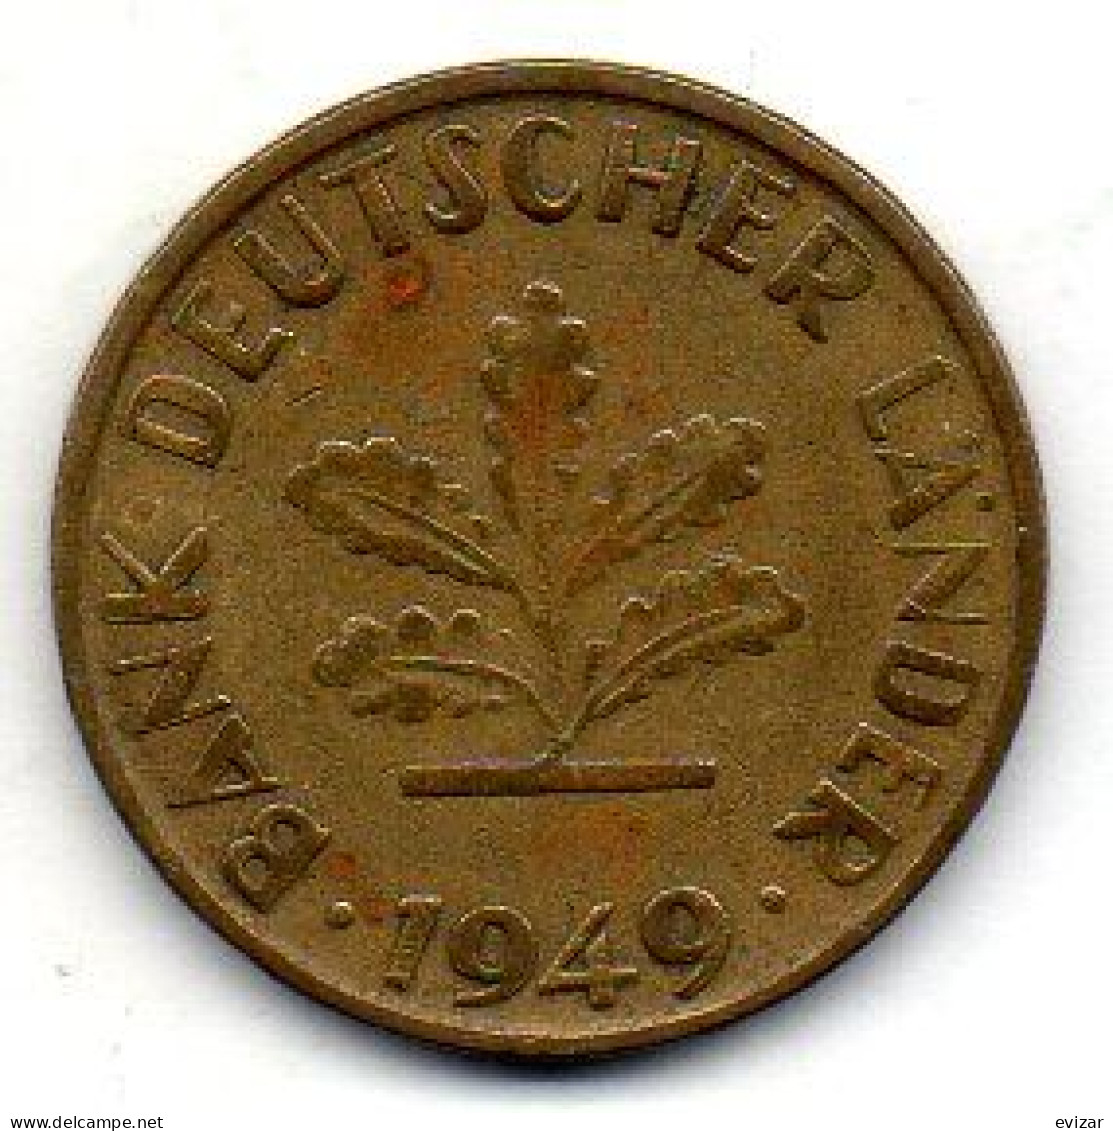 GERMANY - FEDERAL REPUBLIC, 10 Pfennig, Brass, Year 1949-G, KM # 103 - 10 Pfennig